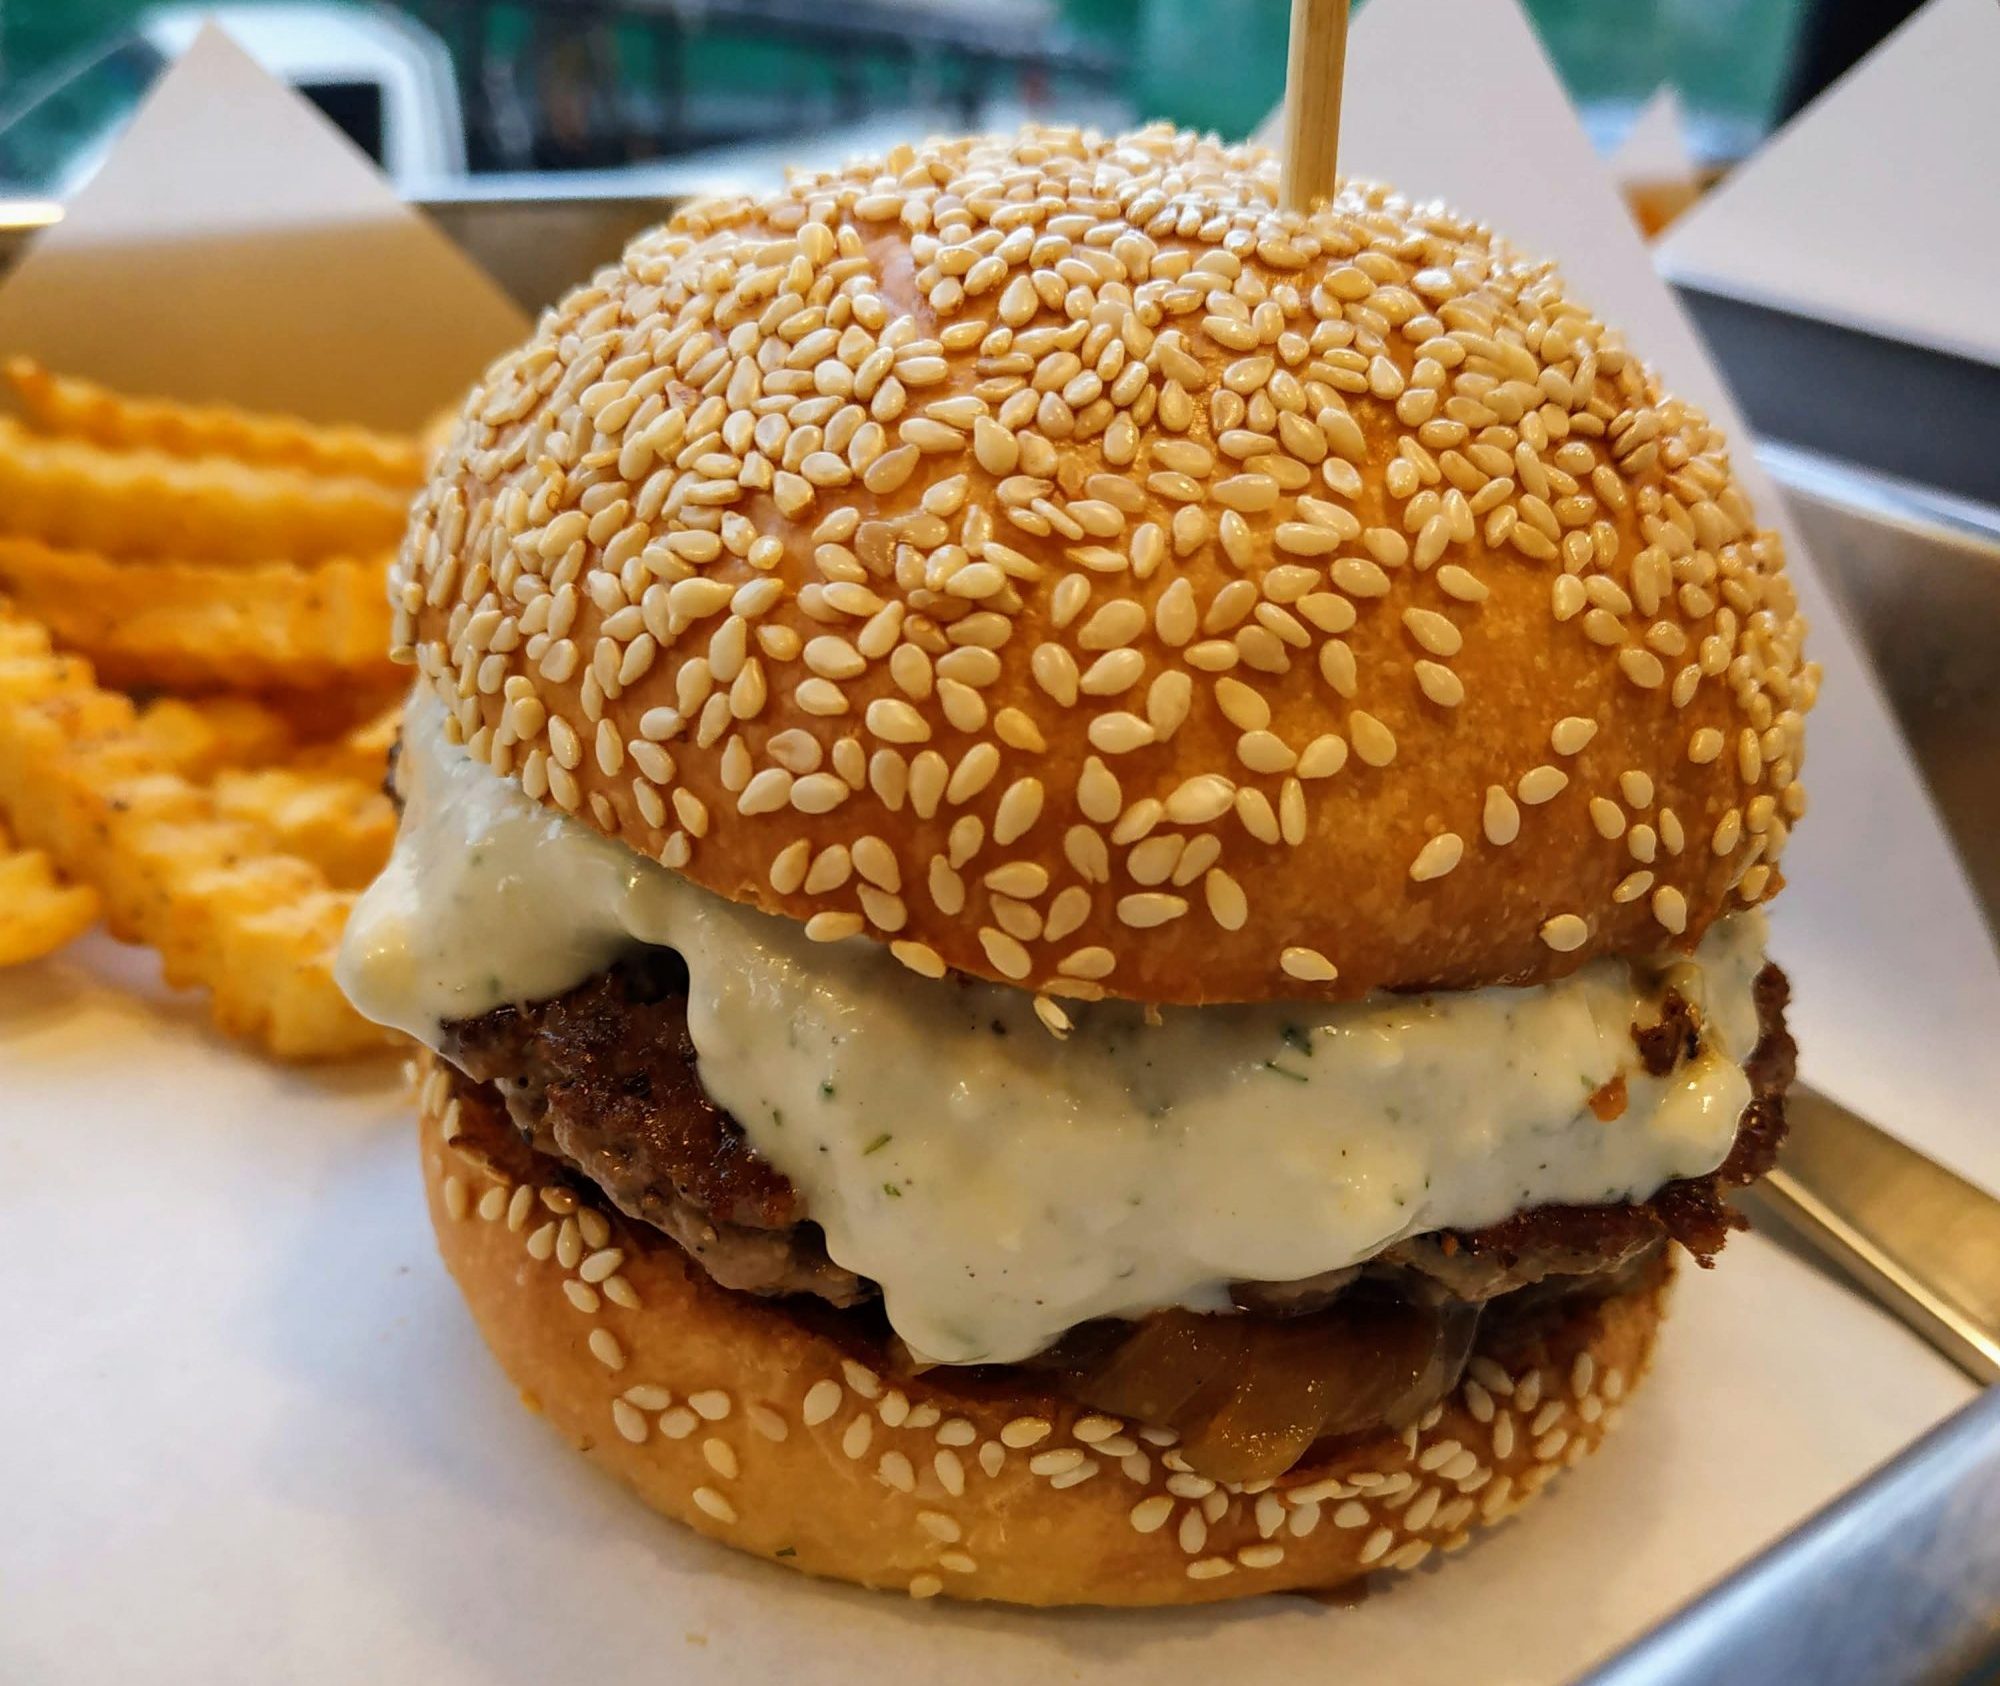 Cheesy Burger at Burgermaster